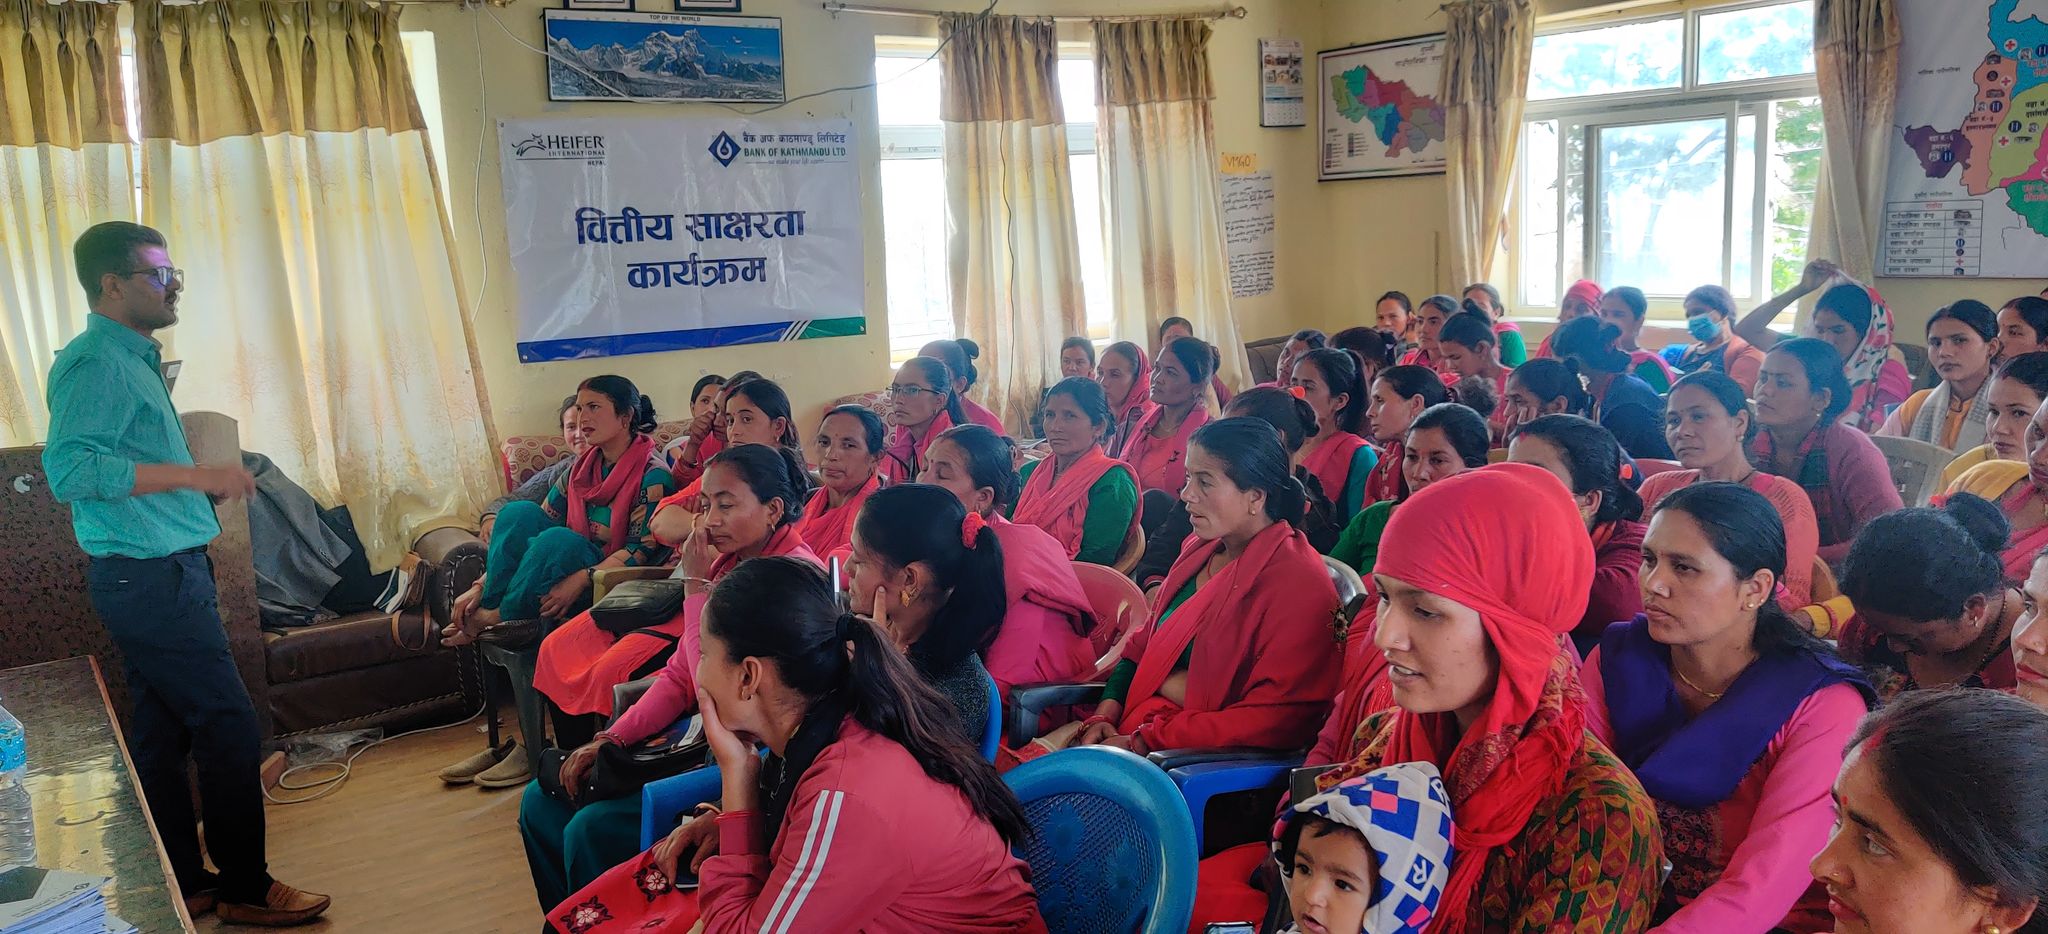 बैंक अफ काठमाण्डूको वित्तीय साक्षरता कार्यक्रम सम्पन्न